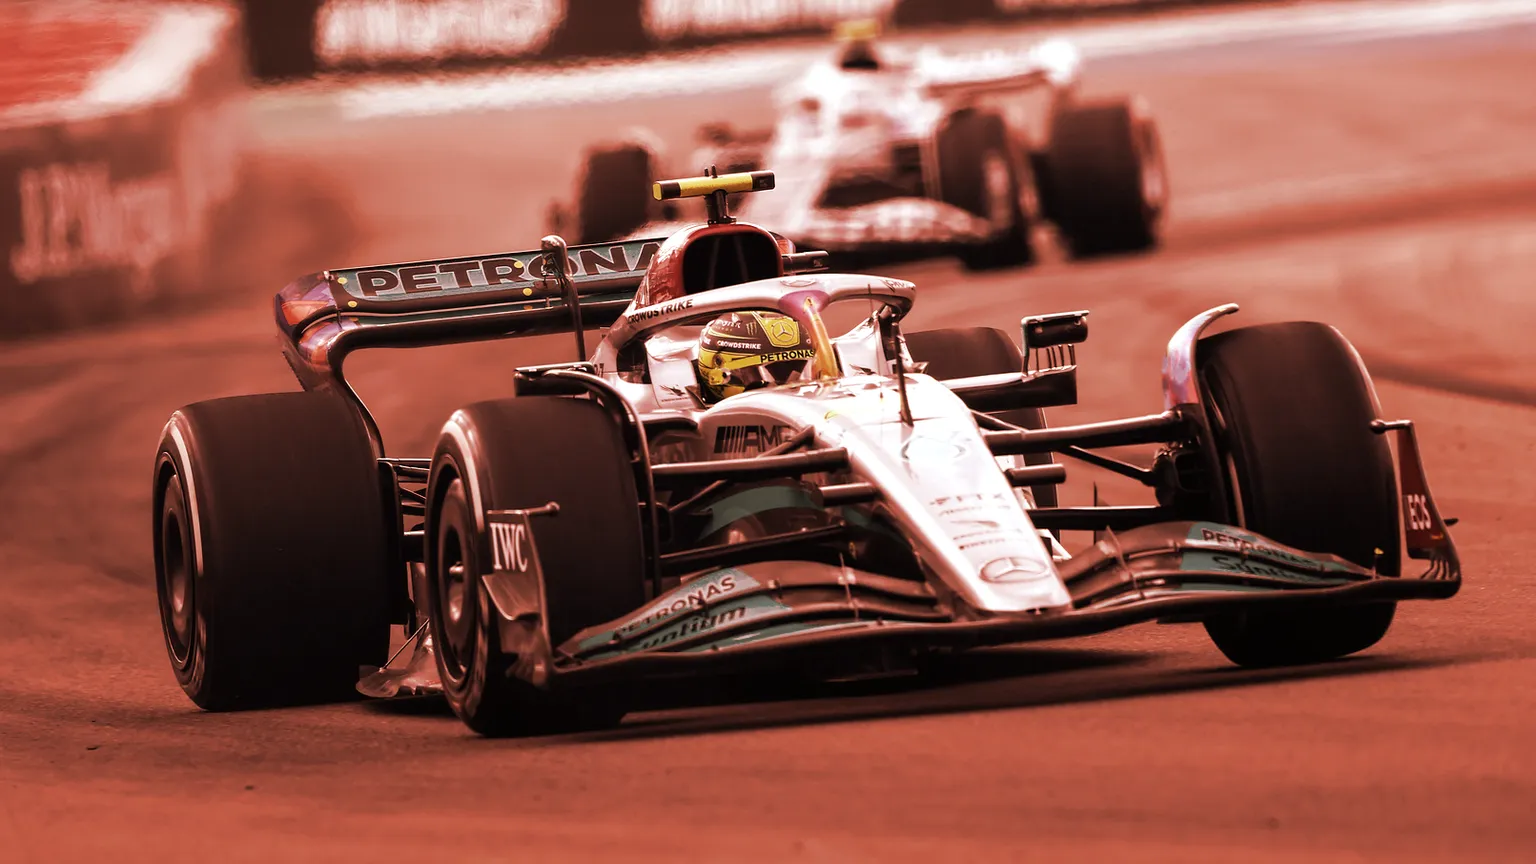 Image: Mercedes-AMG Petronas